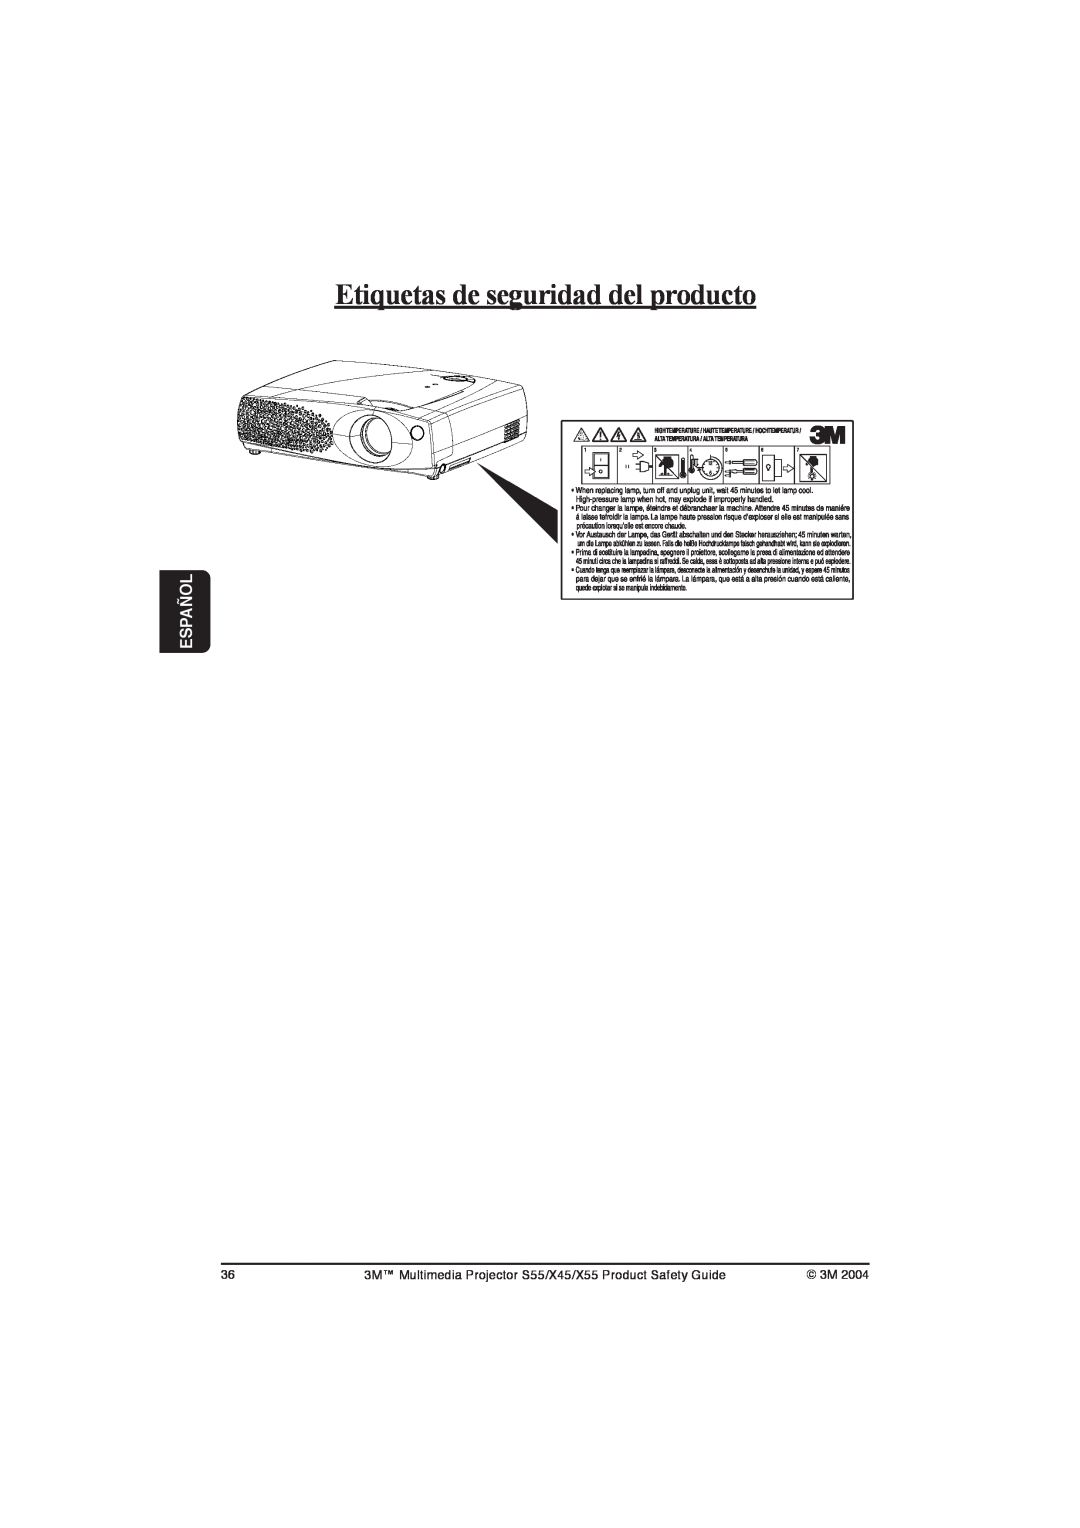 3M X45, S55, X55 manual Etiquetas de seguridad del producto, Español 